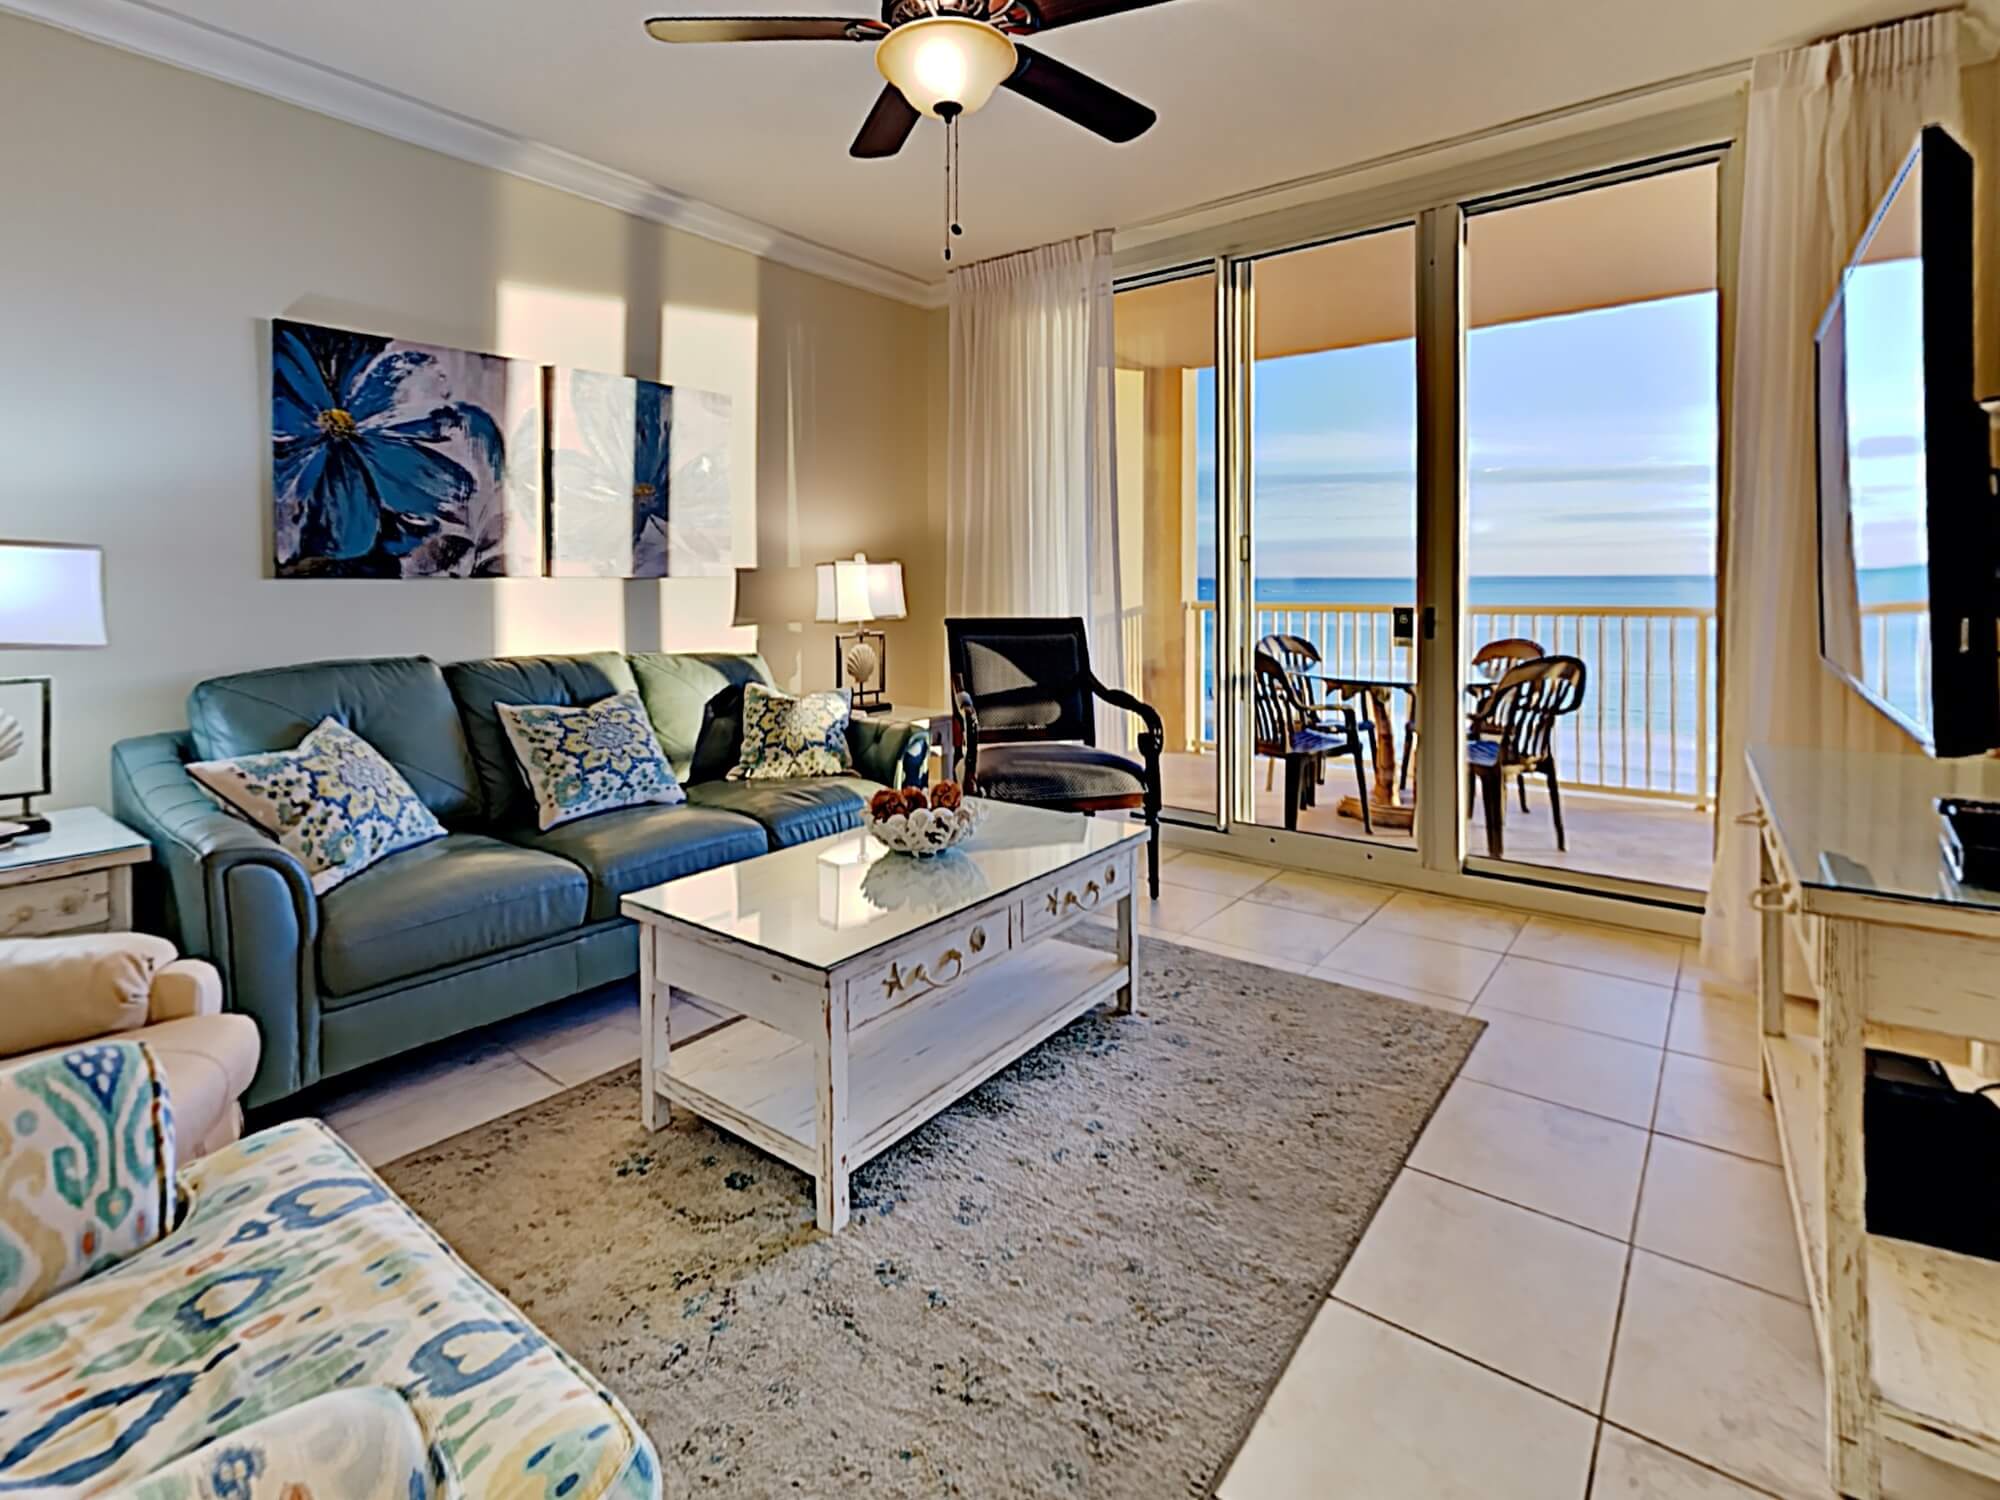 Azure 20 20 Bedroom Vacation Condo Rental Fort Walton Beach FL ...